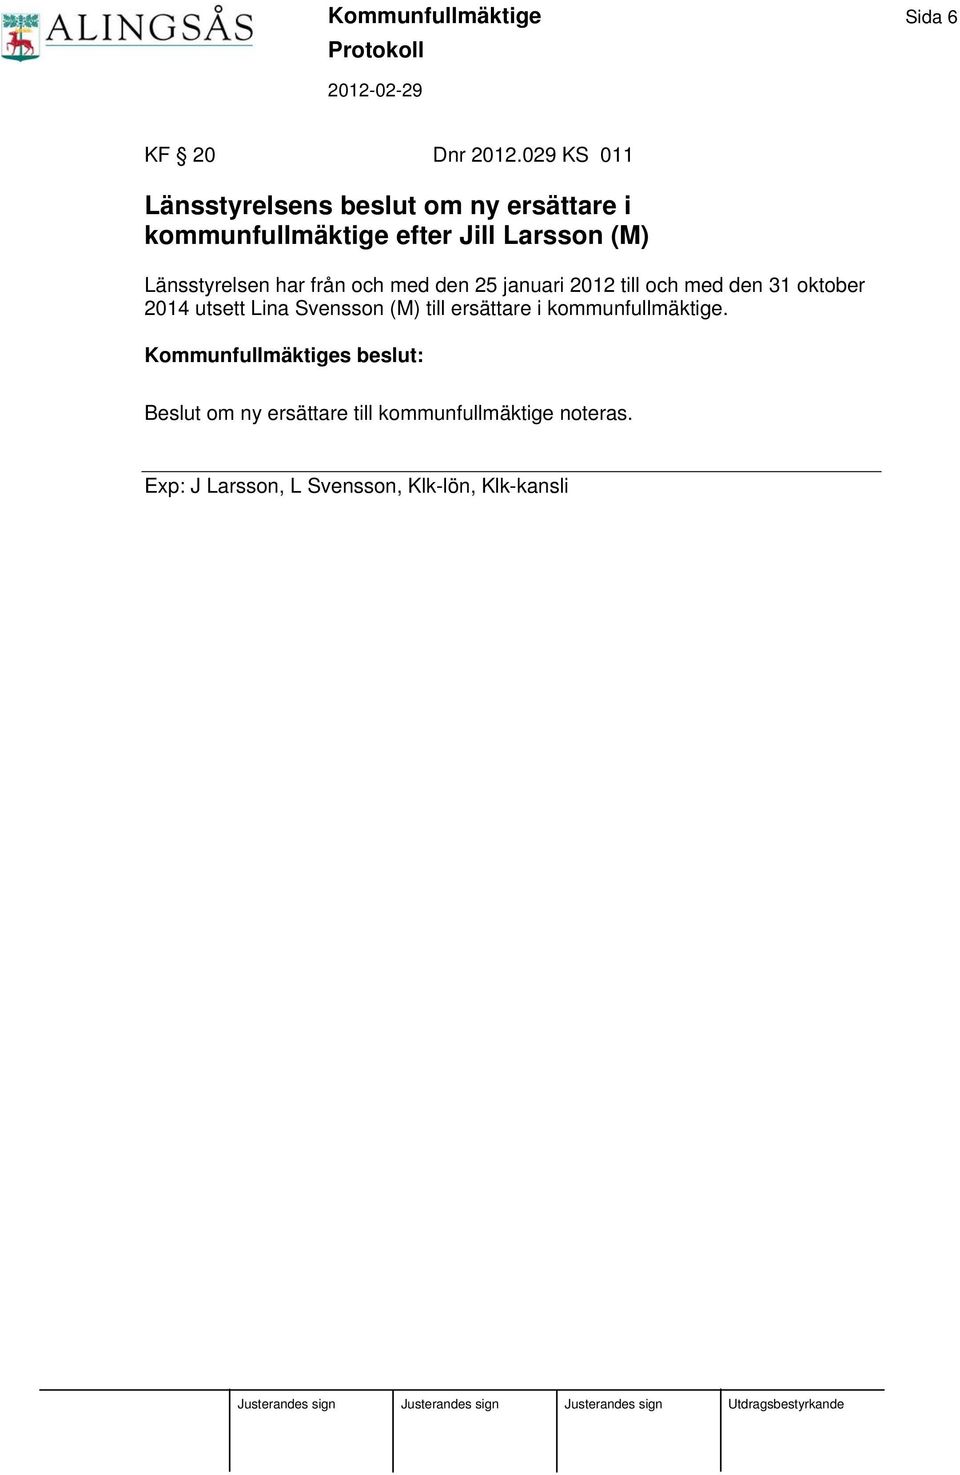 Länsstyrelsen har från och med den 25 januari 2012 till och med den 31 oktober 2014 utsett